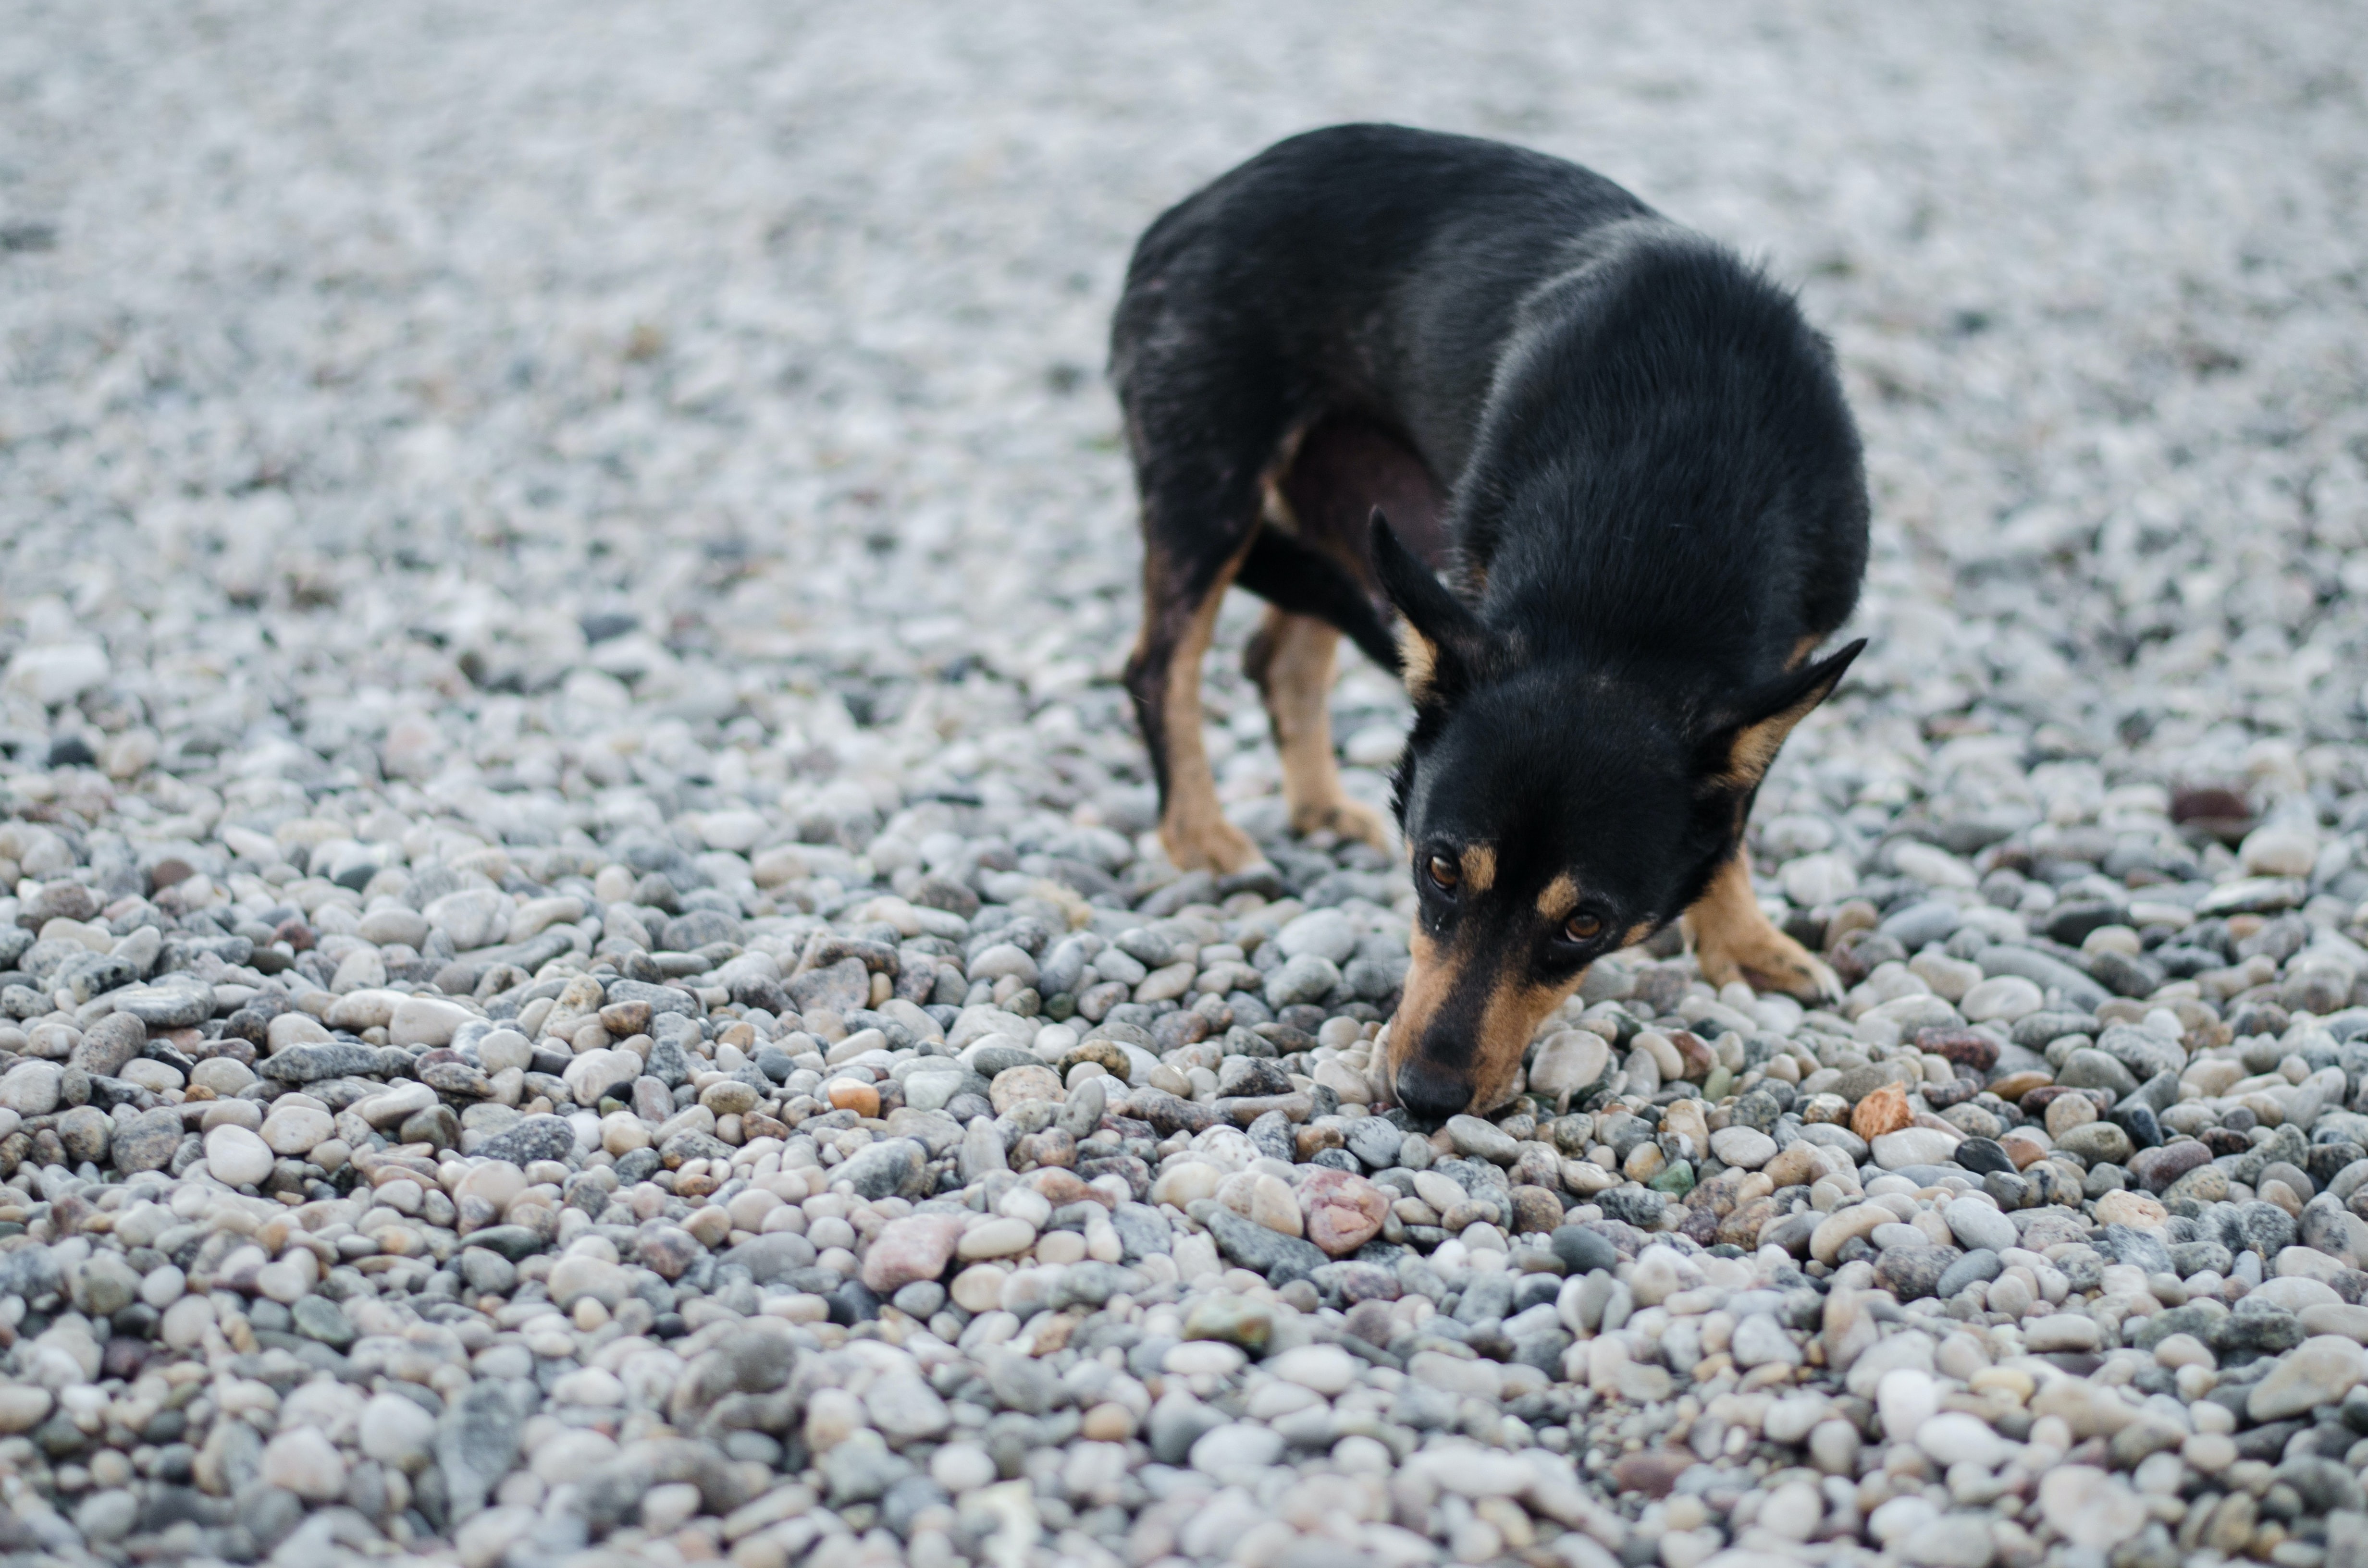 Pesquisas recentes apontam que cachorros podem identificar pacientes com Covid-19 (Foto: Andrey Konstantinov / Unsplash)